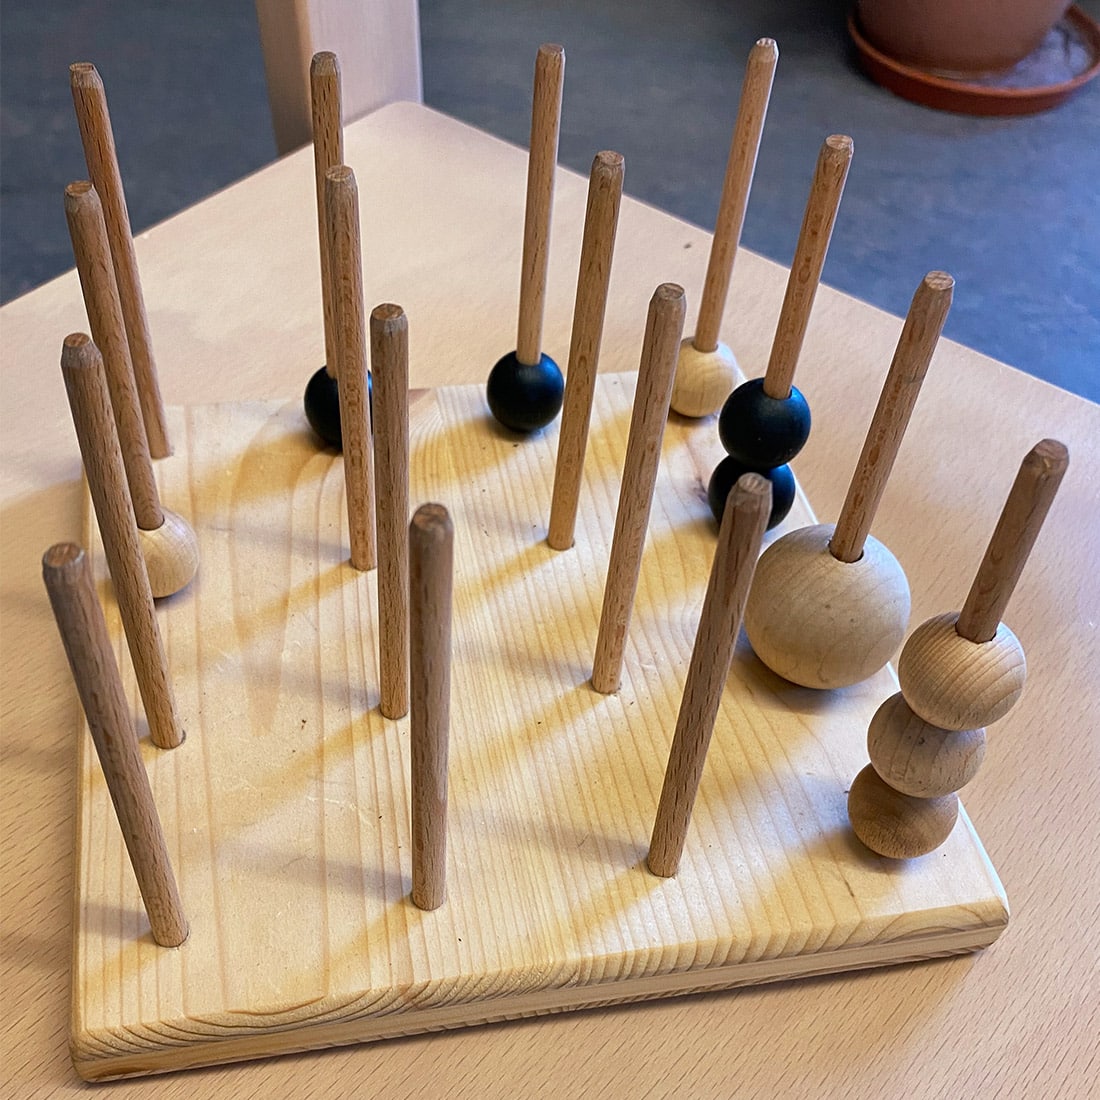 Ein hölzernes Brettspiel mit vertikalen Stiften, von denen einige schwarze und naturfarbene Holzkugeln halten, auf einem Tisch.